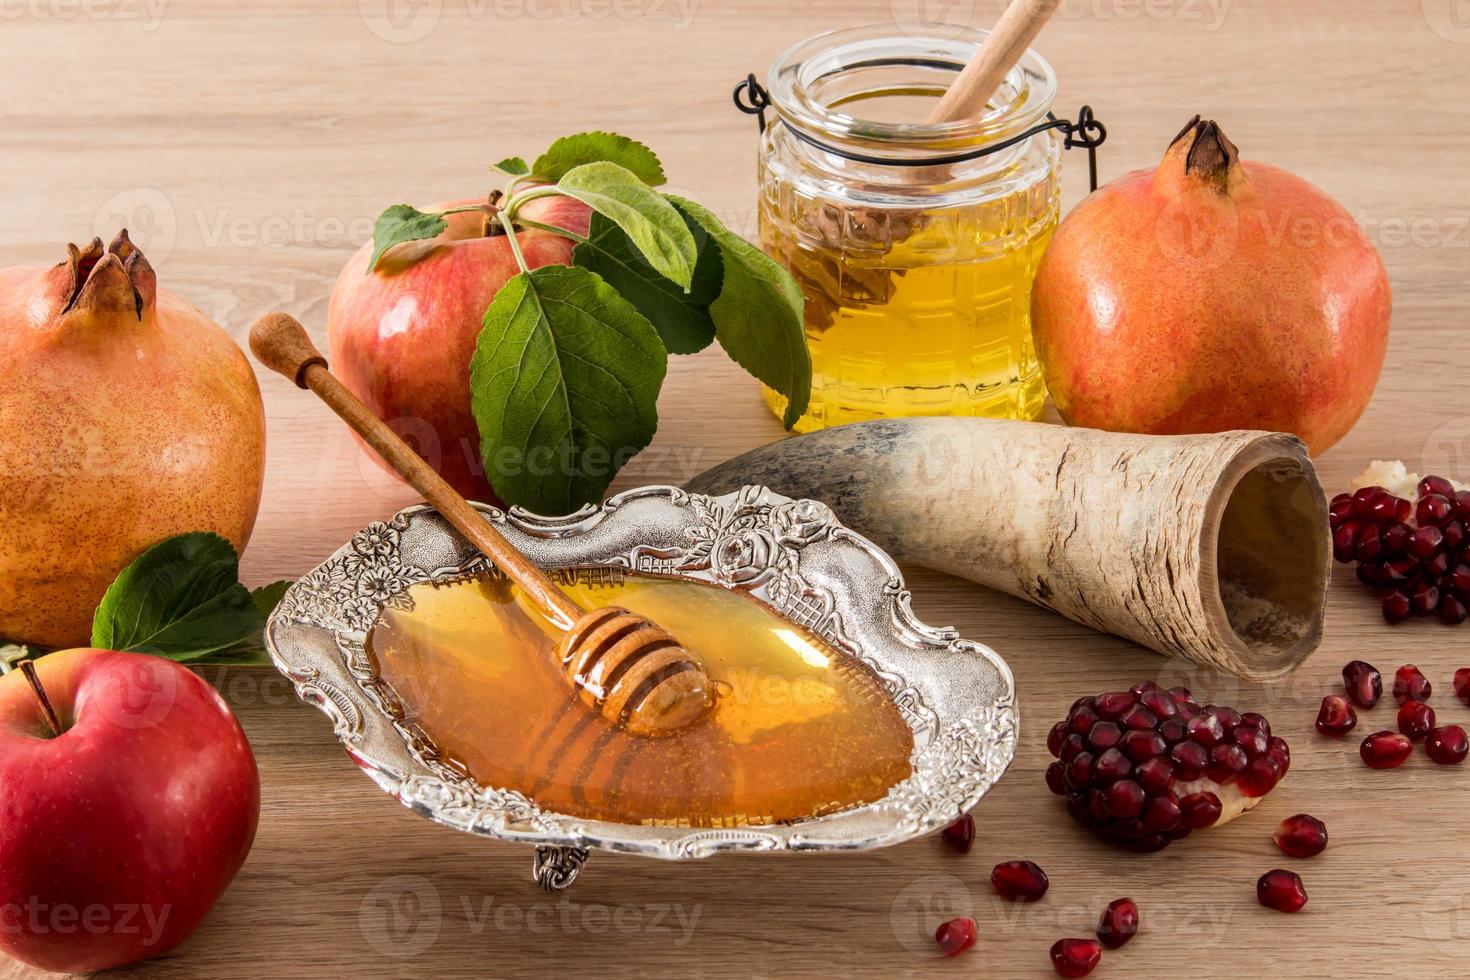 uma composição festiva do ano novo judaico de roshkasan. símbolos tradicionais do feriado - maçãs maduras, mel, romã. vista frontal. foto